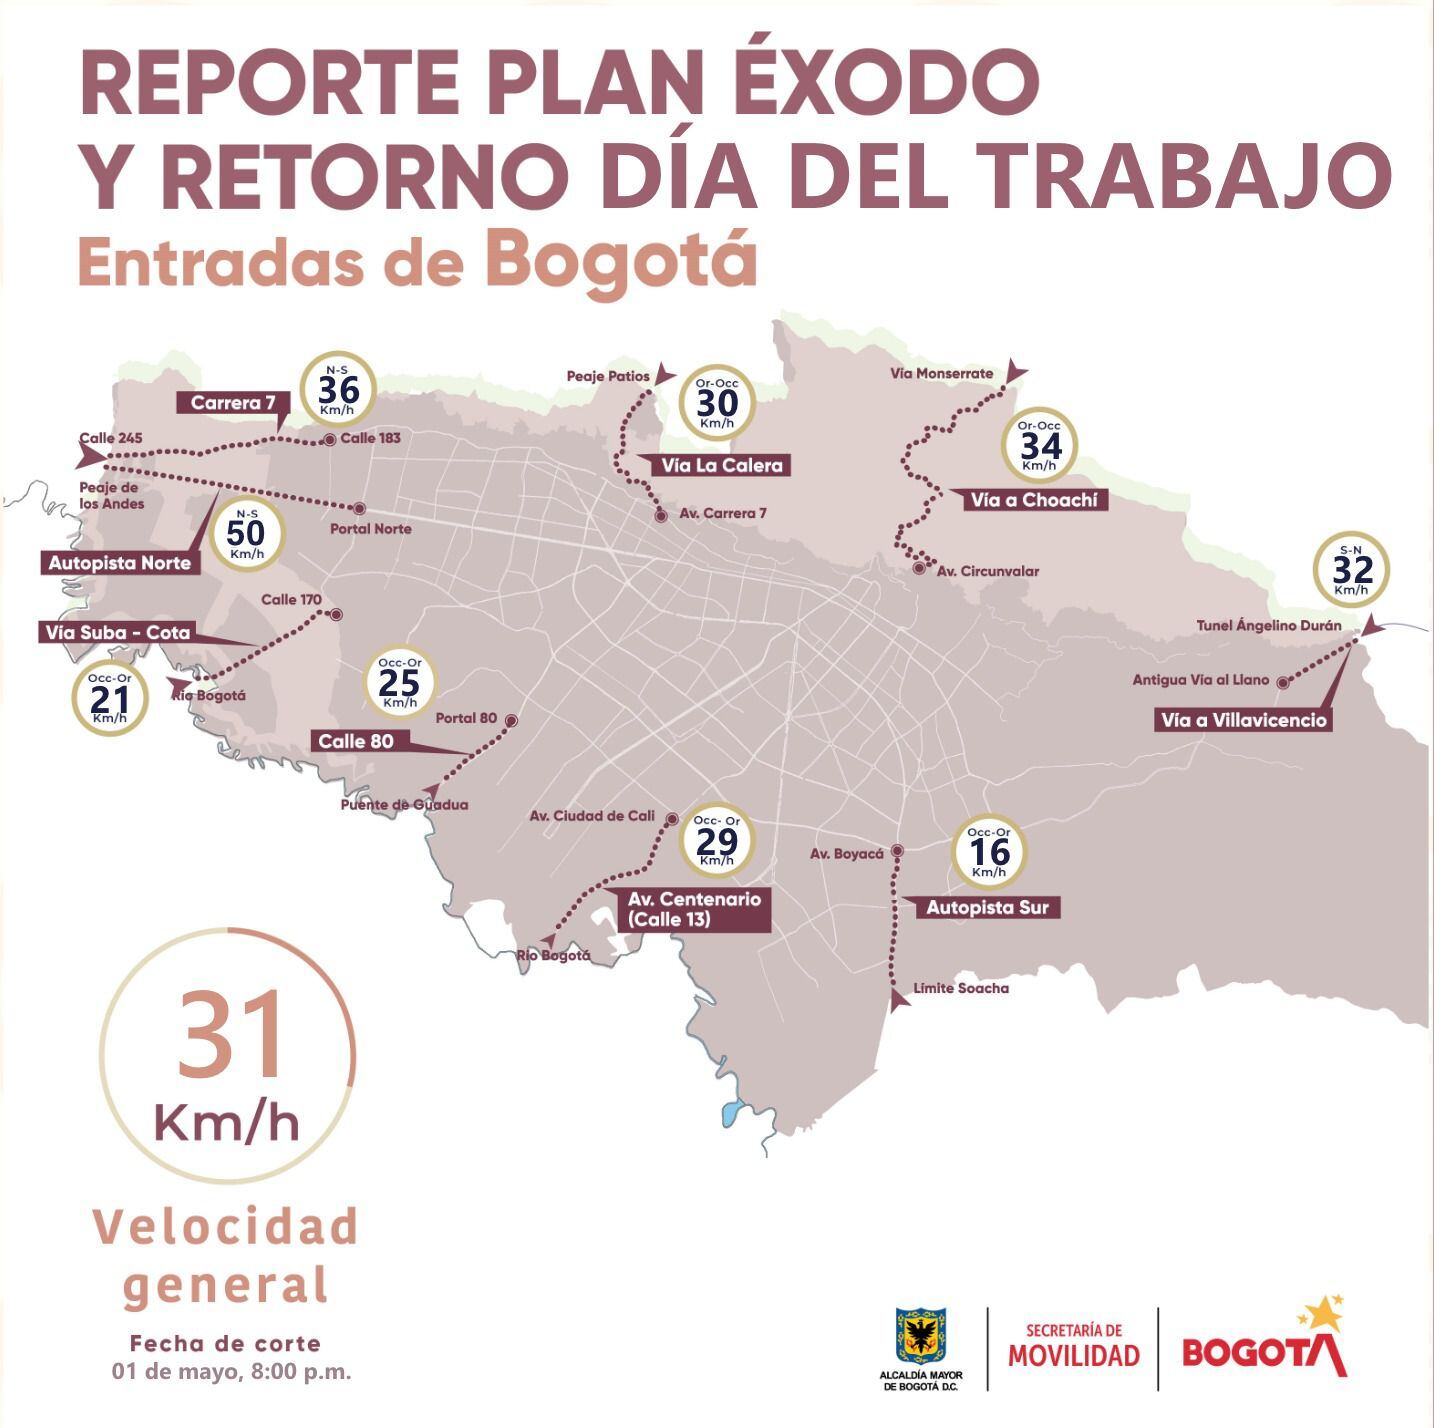 Más de 405.000 vehículos ingresaron a Bogotá. Créditos: Secretaría de Movilidad de Bogotá